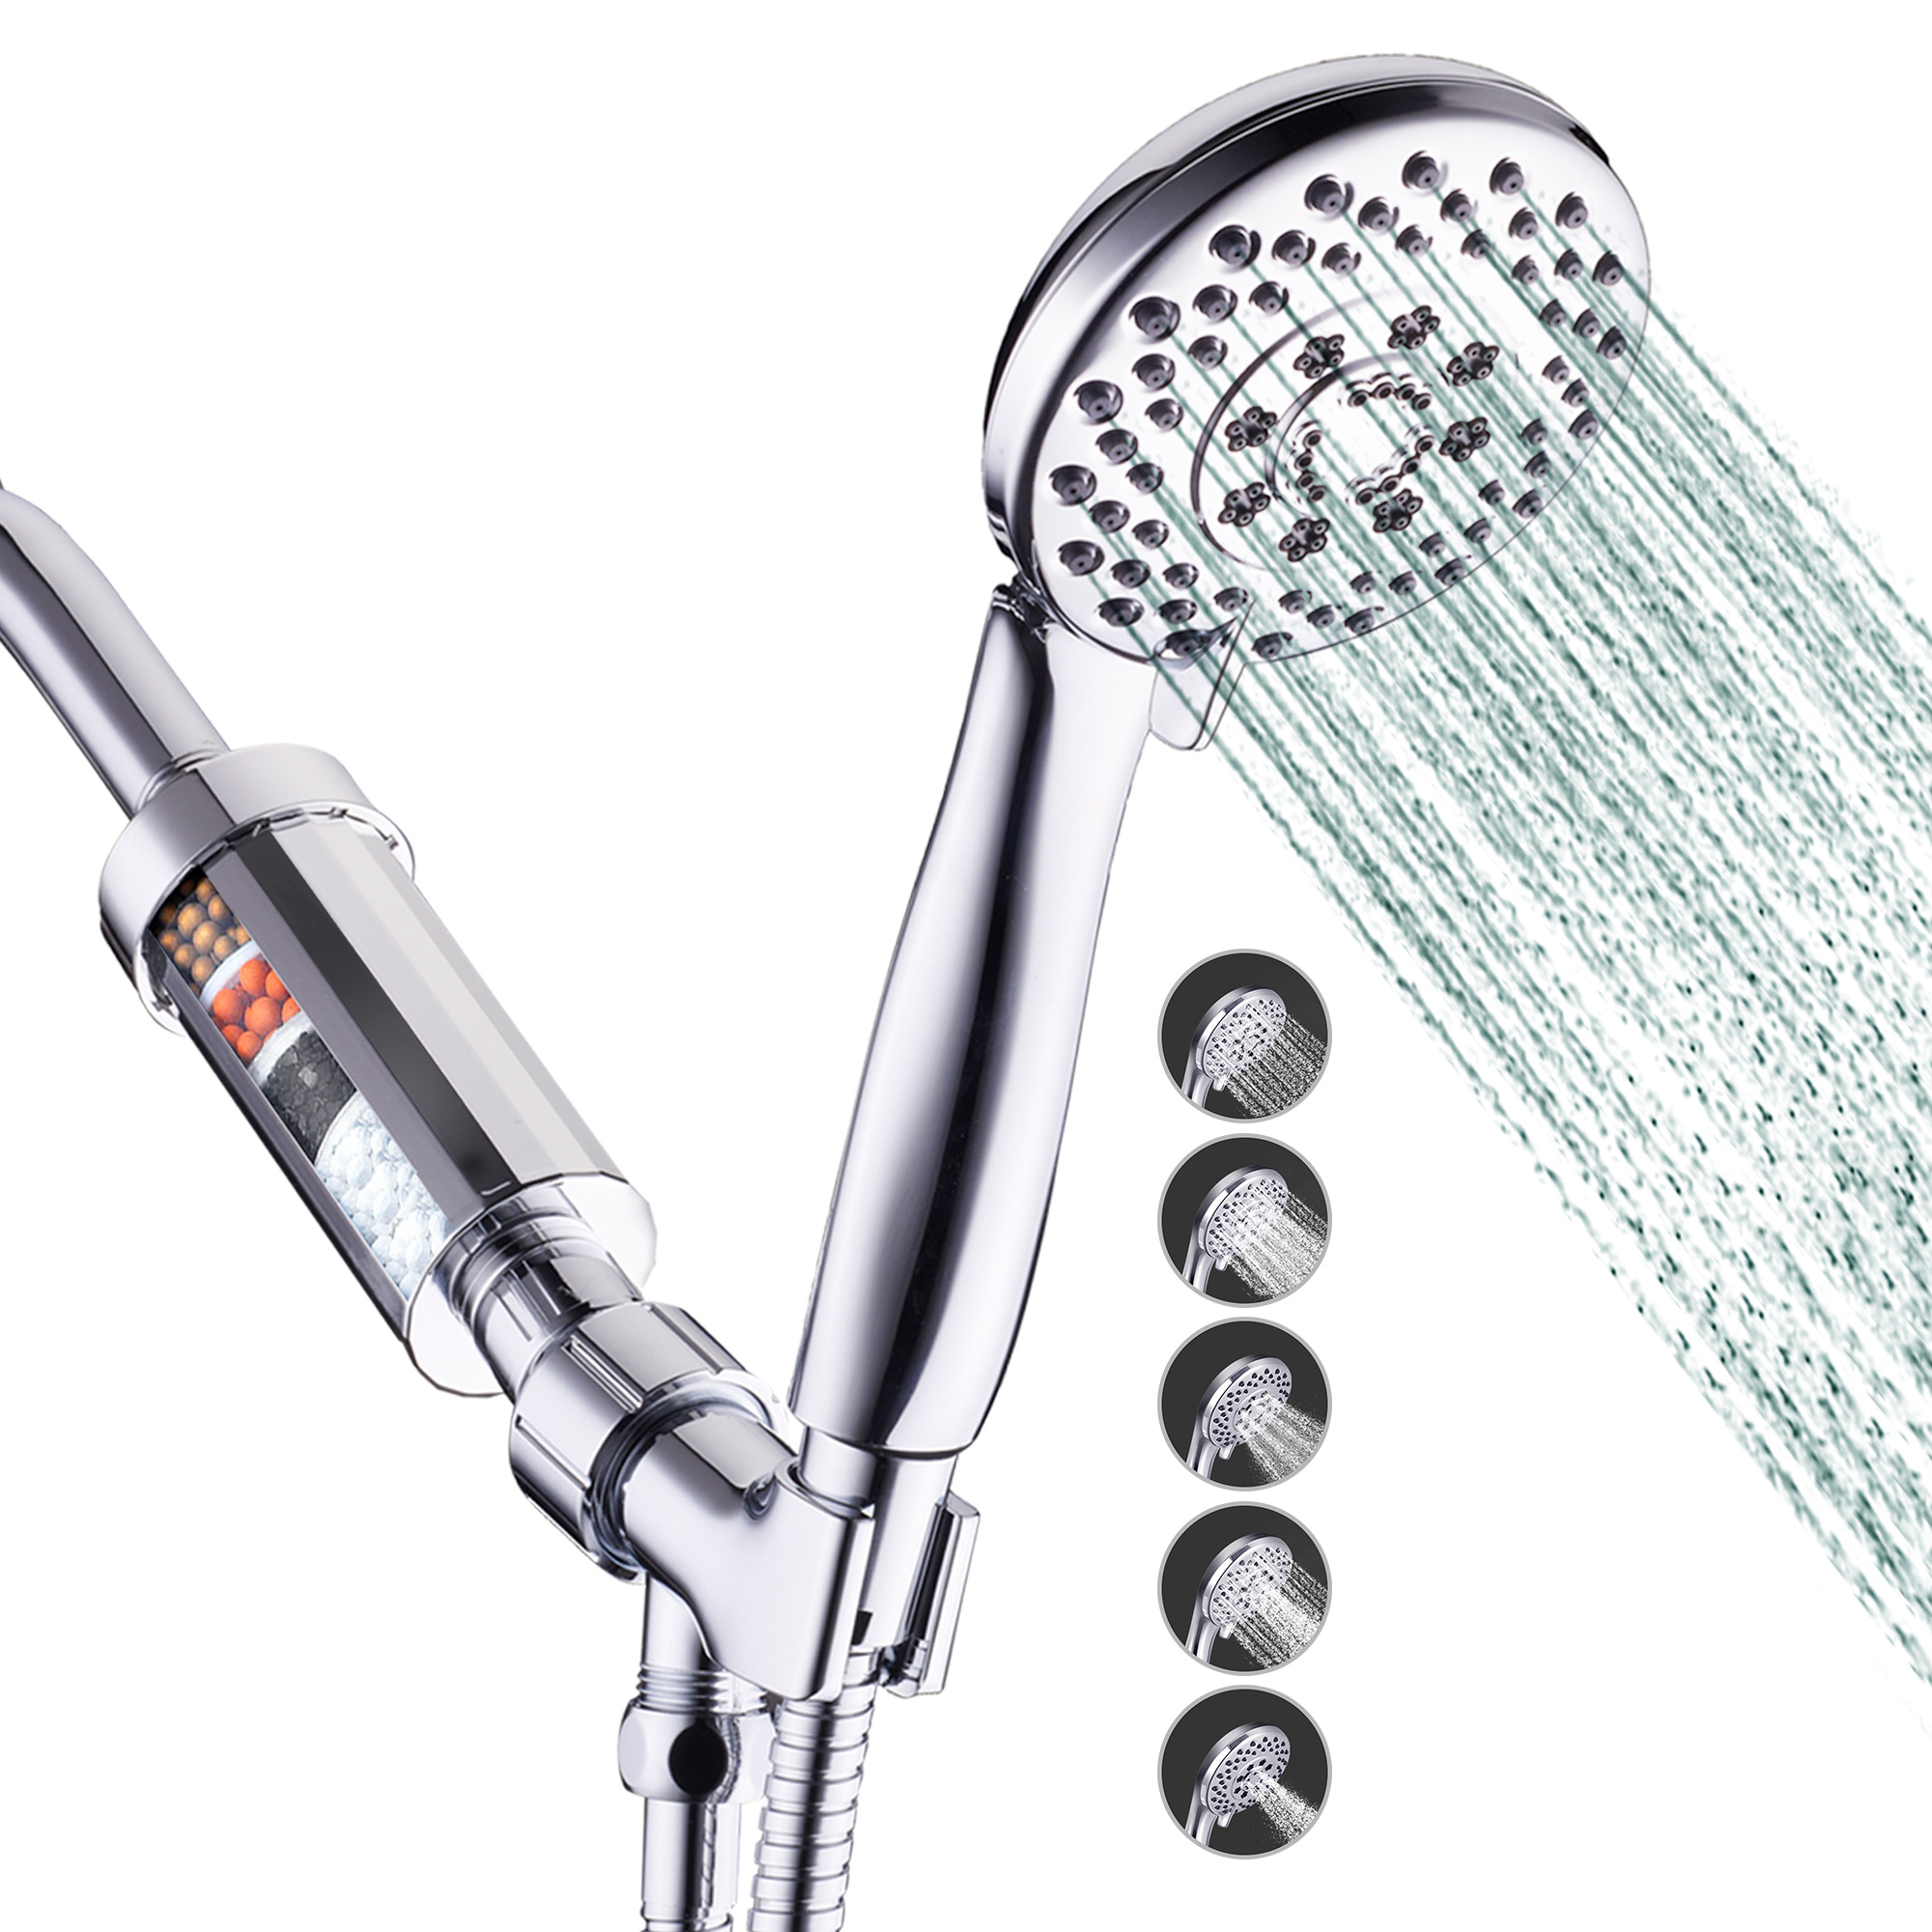 Cabezal de ducha filtrado, cabezal de ducha de 20 etapas con filtro doble  para agua dura, cabezal de ducha de alta presión con filtros para eliminar